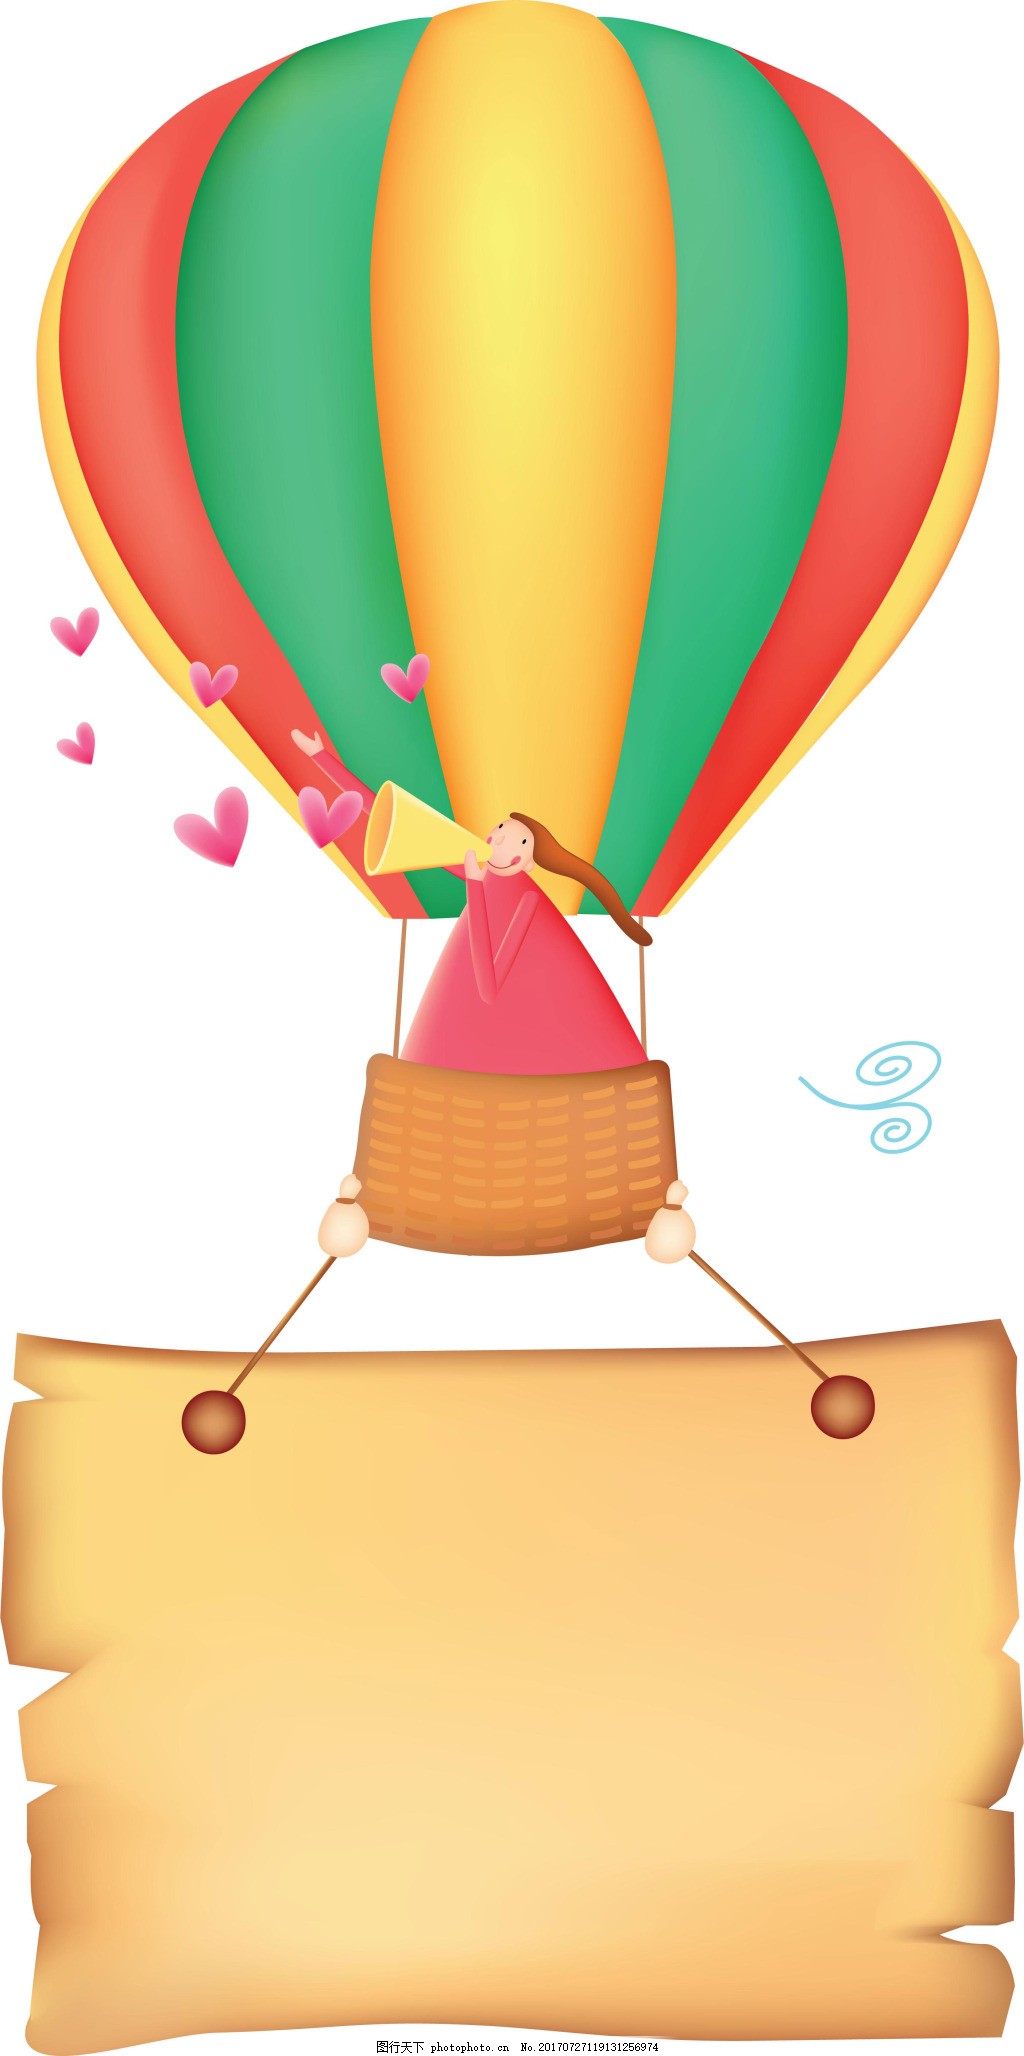 浪漫热气球唯美二次元场景 - 堆糖，美图壁纸兴趣社区